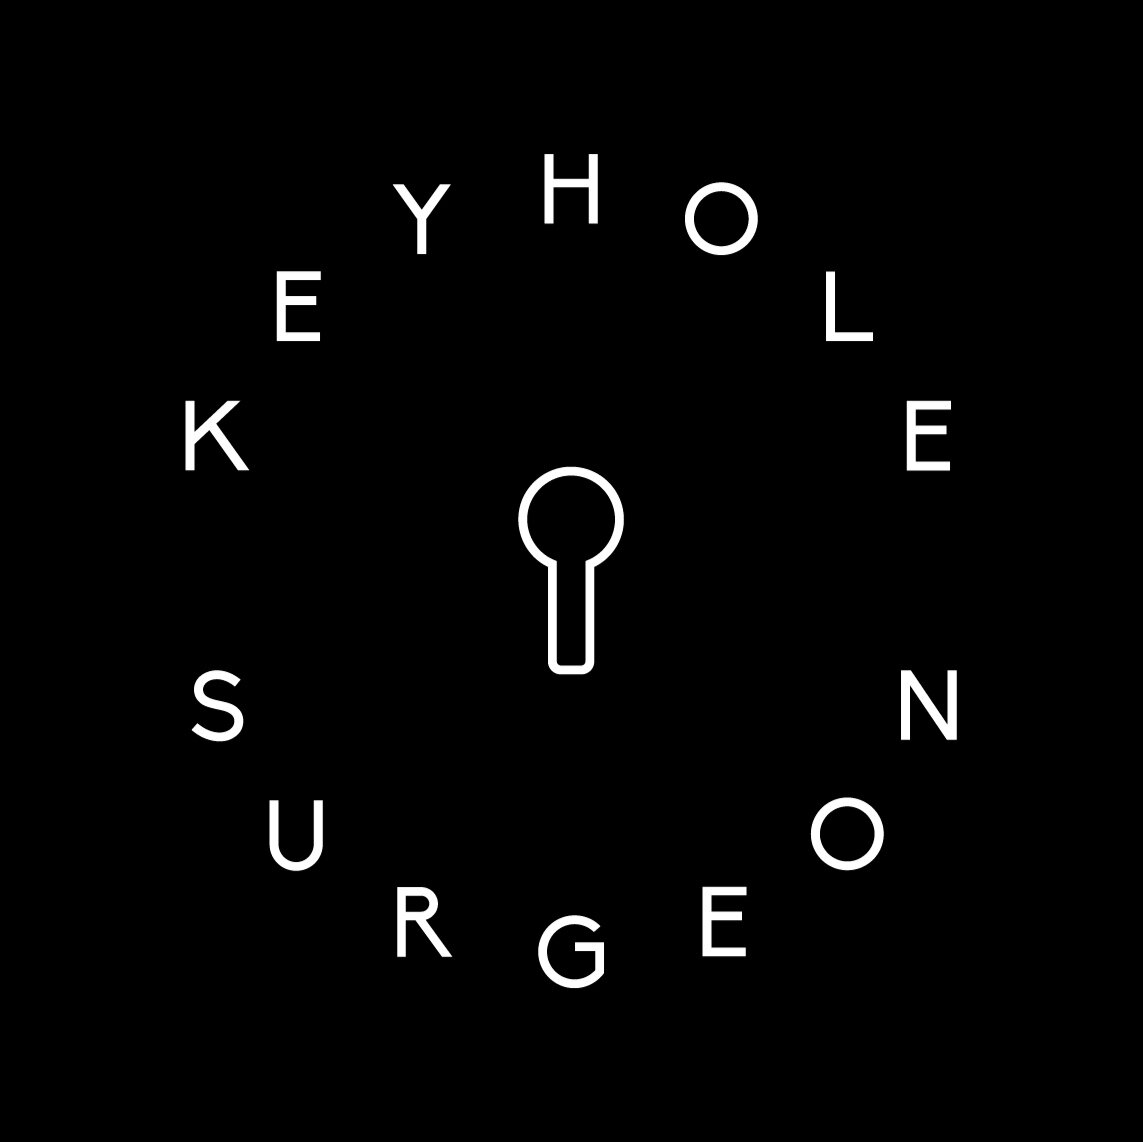 Keyhole Surgeon